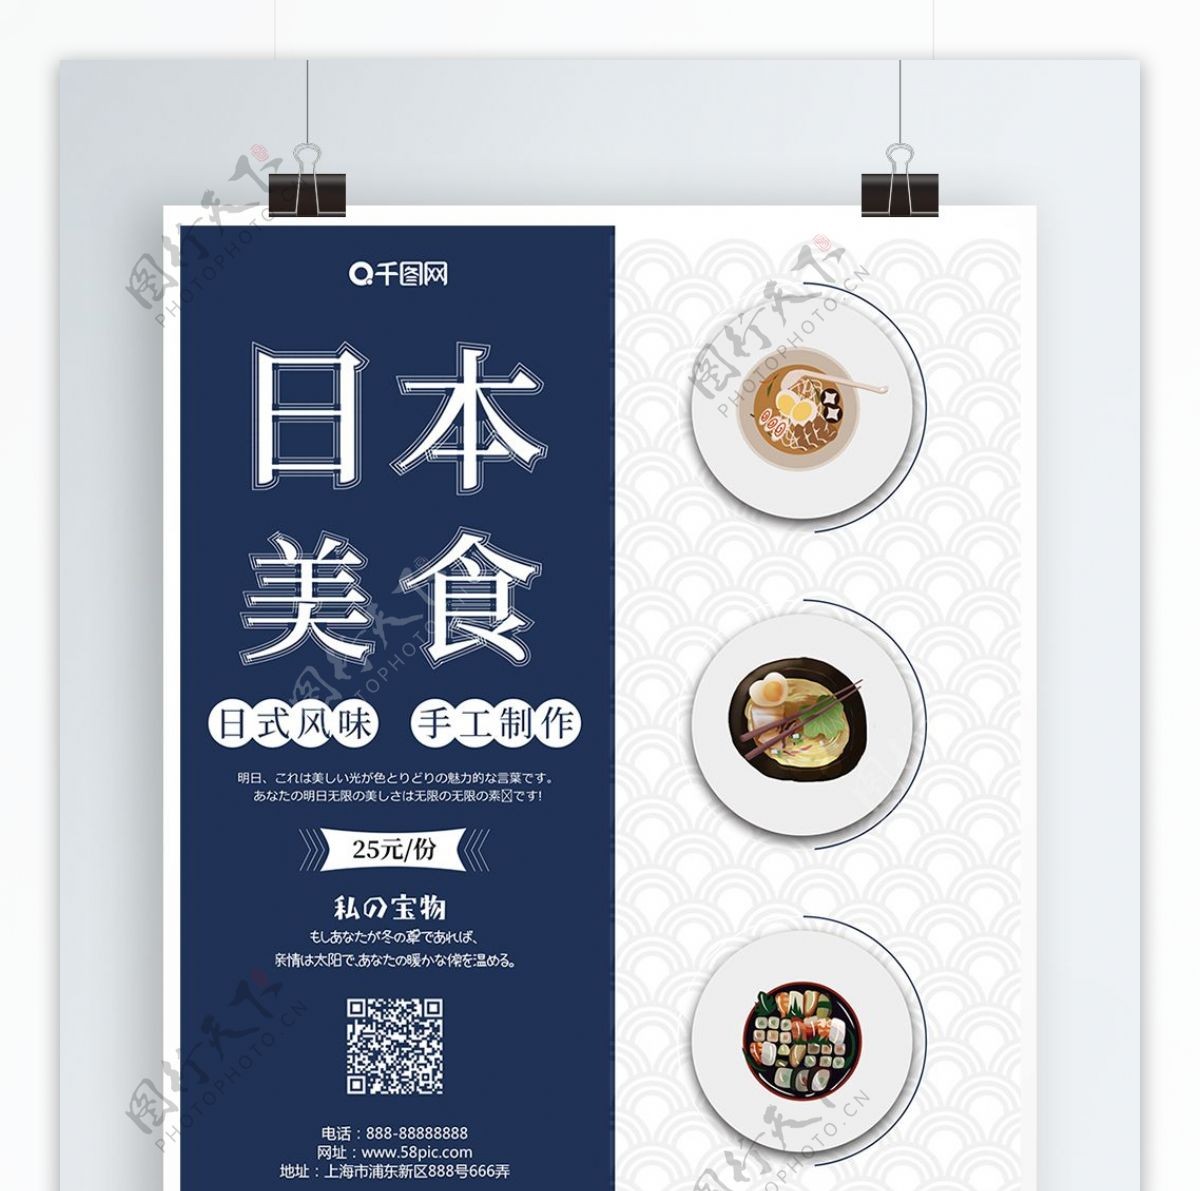 日系简约小清新风格日本美食海报